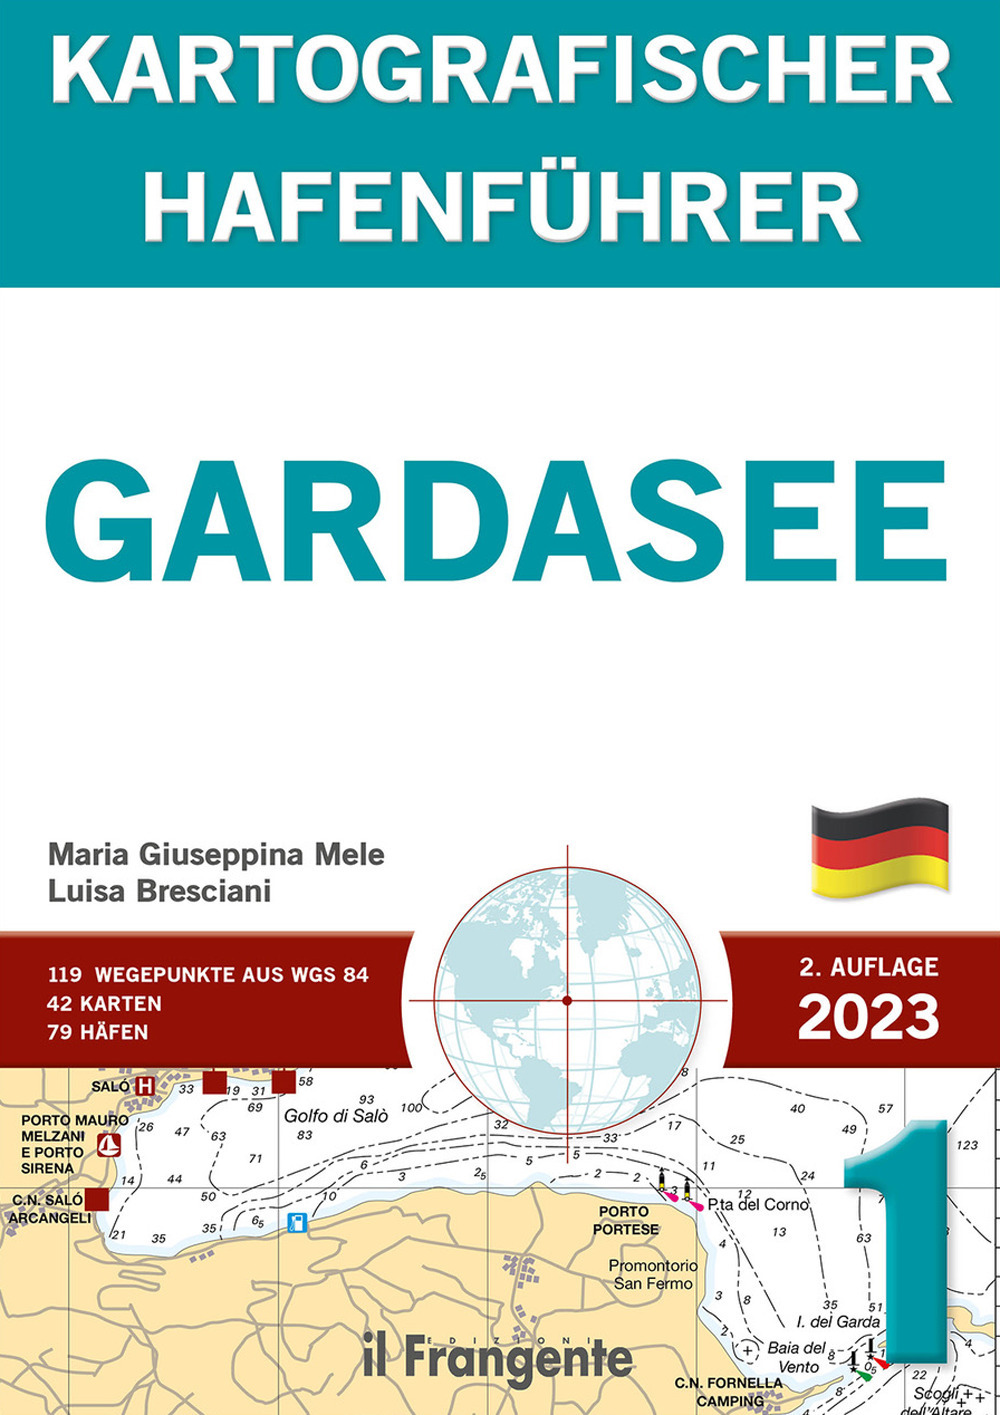 Gardasee kartografischer hafenführer P1